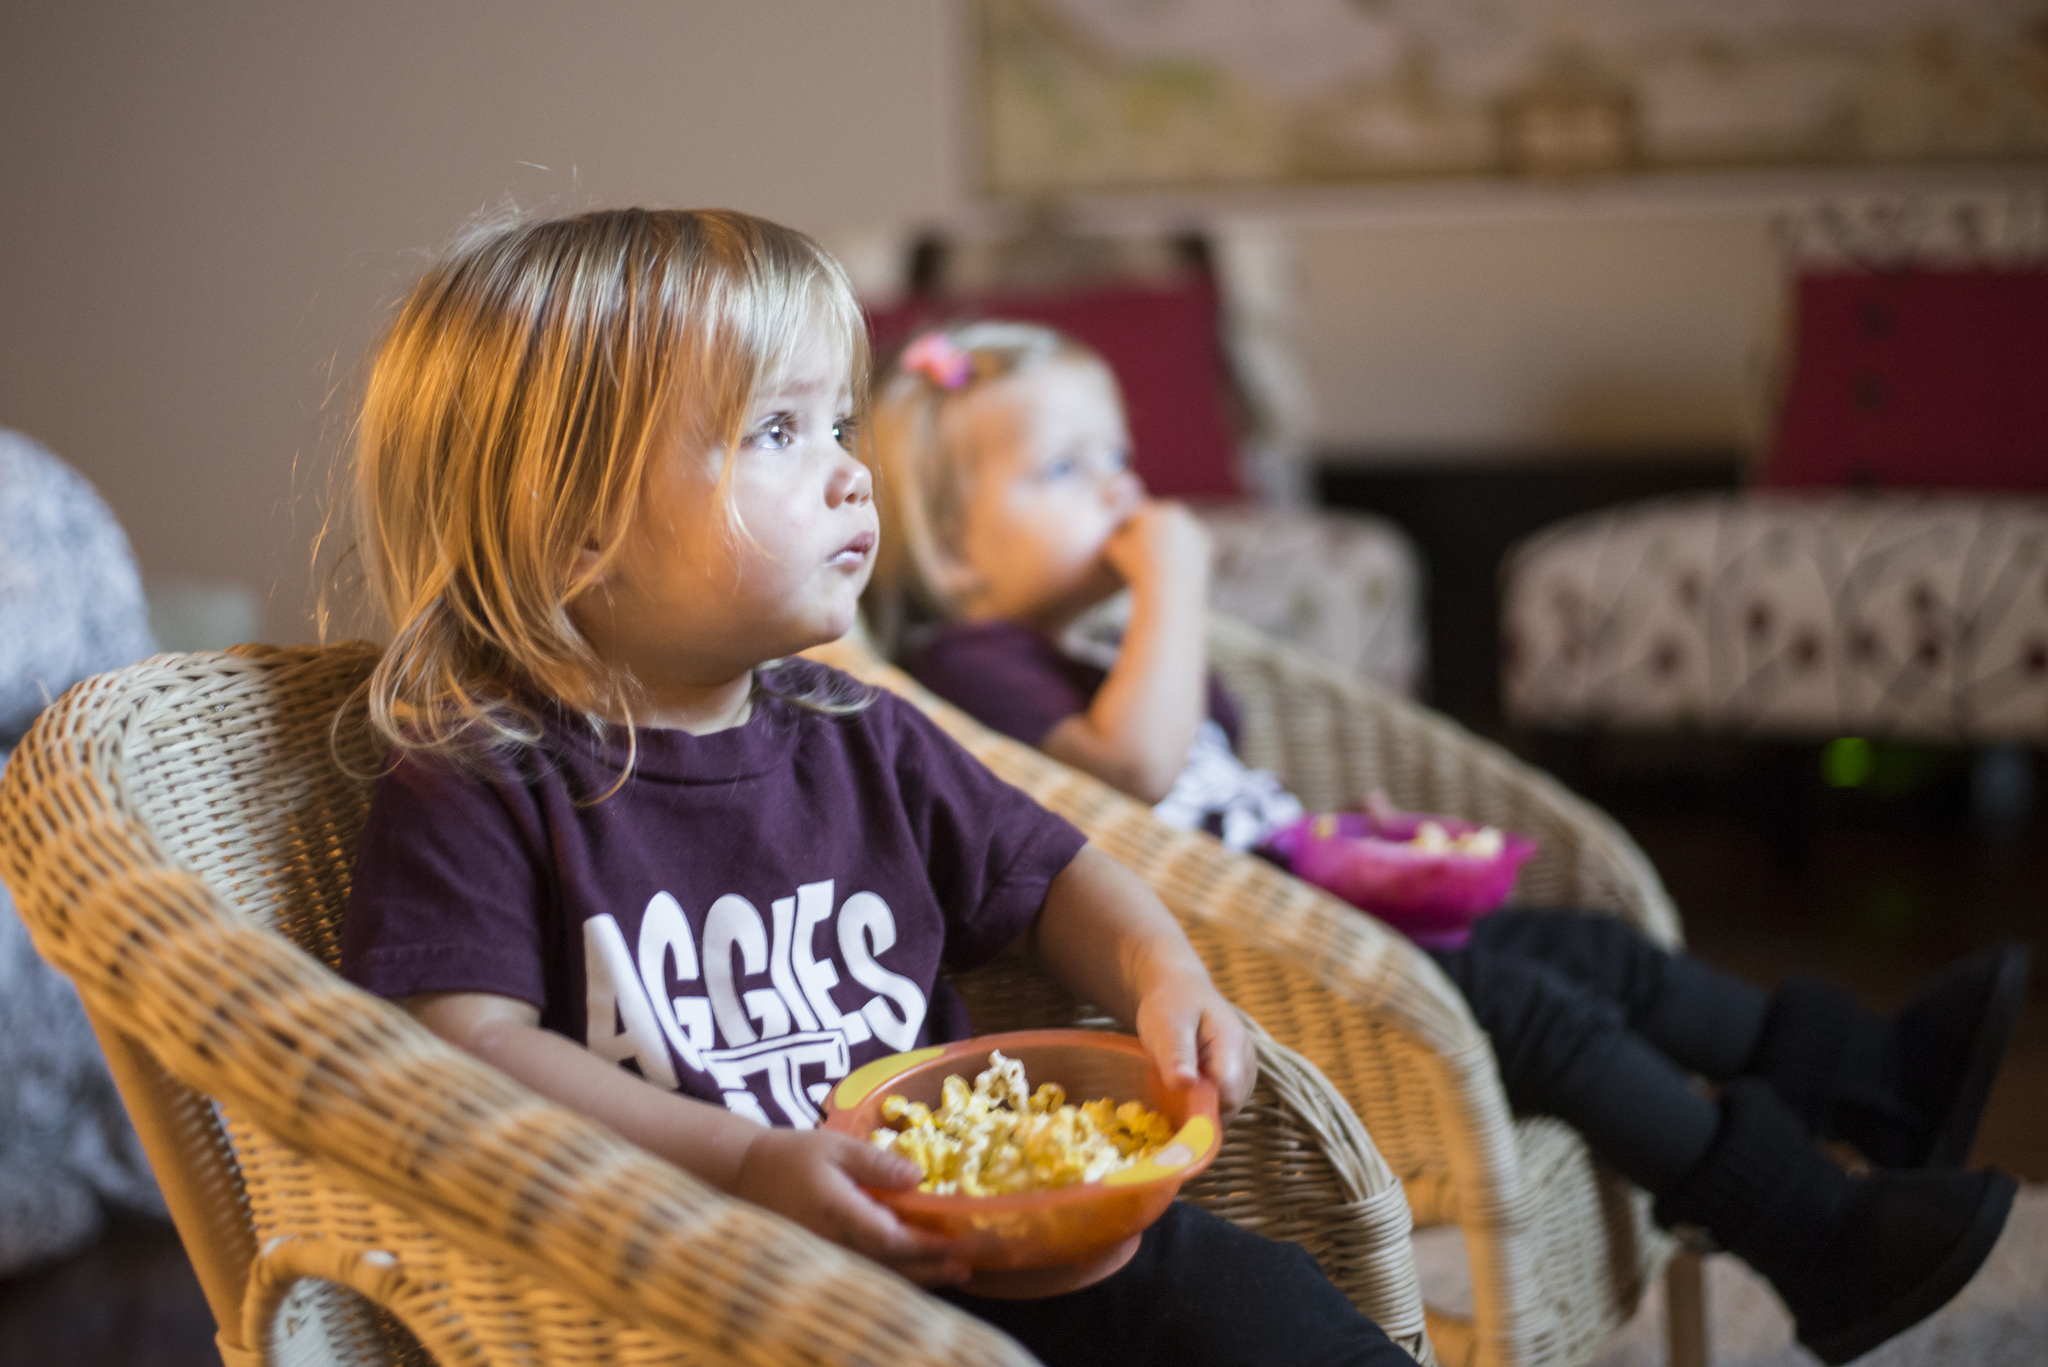 Οι τηλεοπτικές διαφημίσεις τροφίμων αυξάνουν την όρεξη των παιδιών